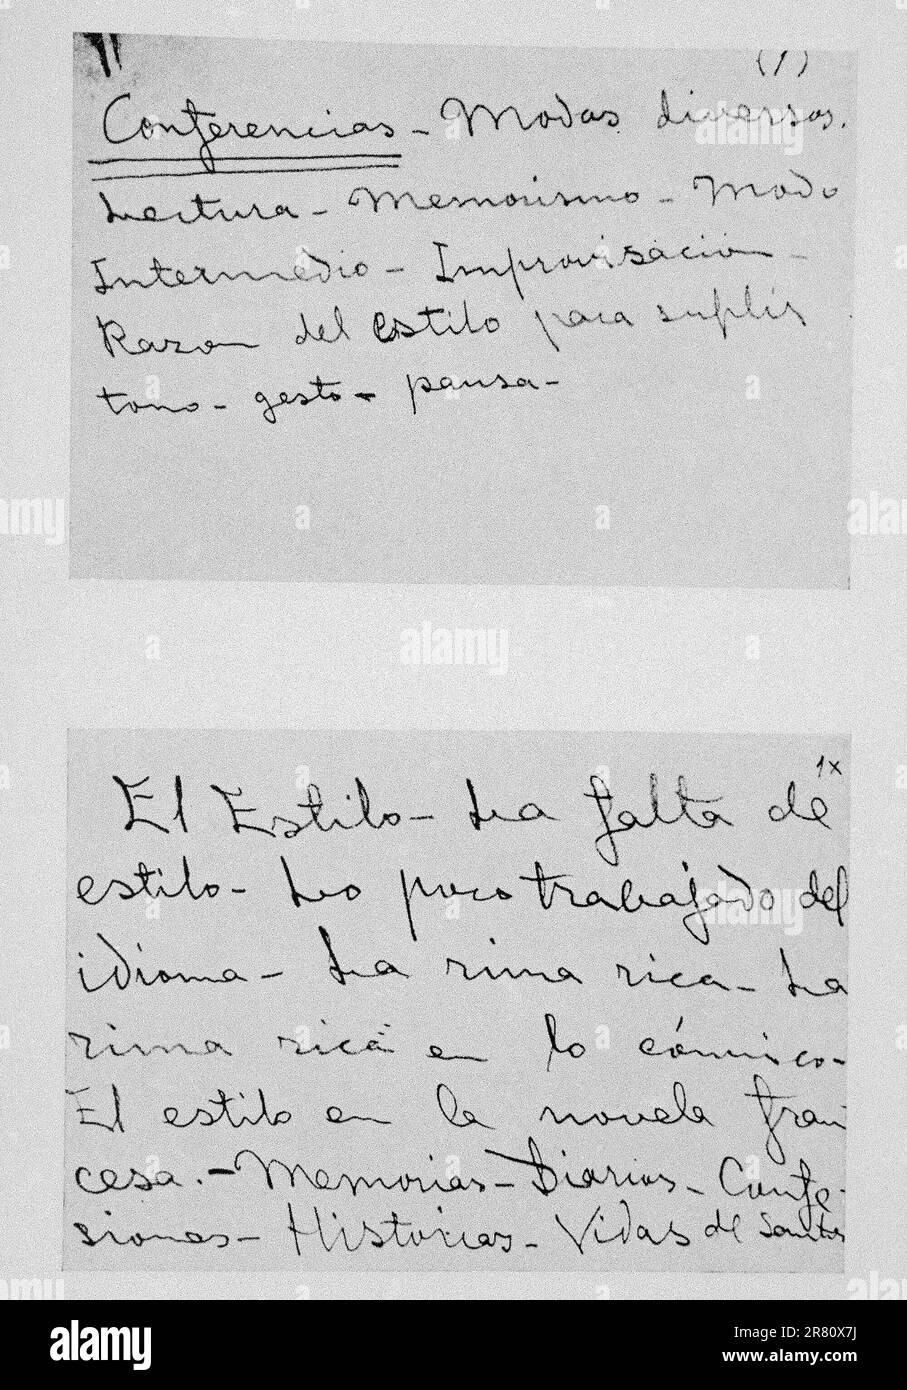 CONFERENCIA SOBRE LITERATURA PRONUNCIADA POR VALLE INCLAN EN EL CASINO DE MADRID EL 3/3/1932. Author: RAMON DEL VALLE-INCLAN o R. M. VALLE PEÑA. Stock Photo